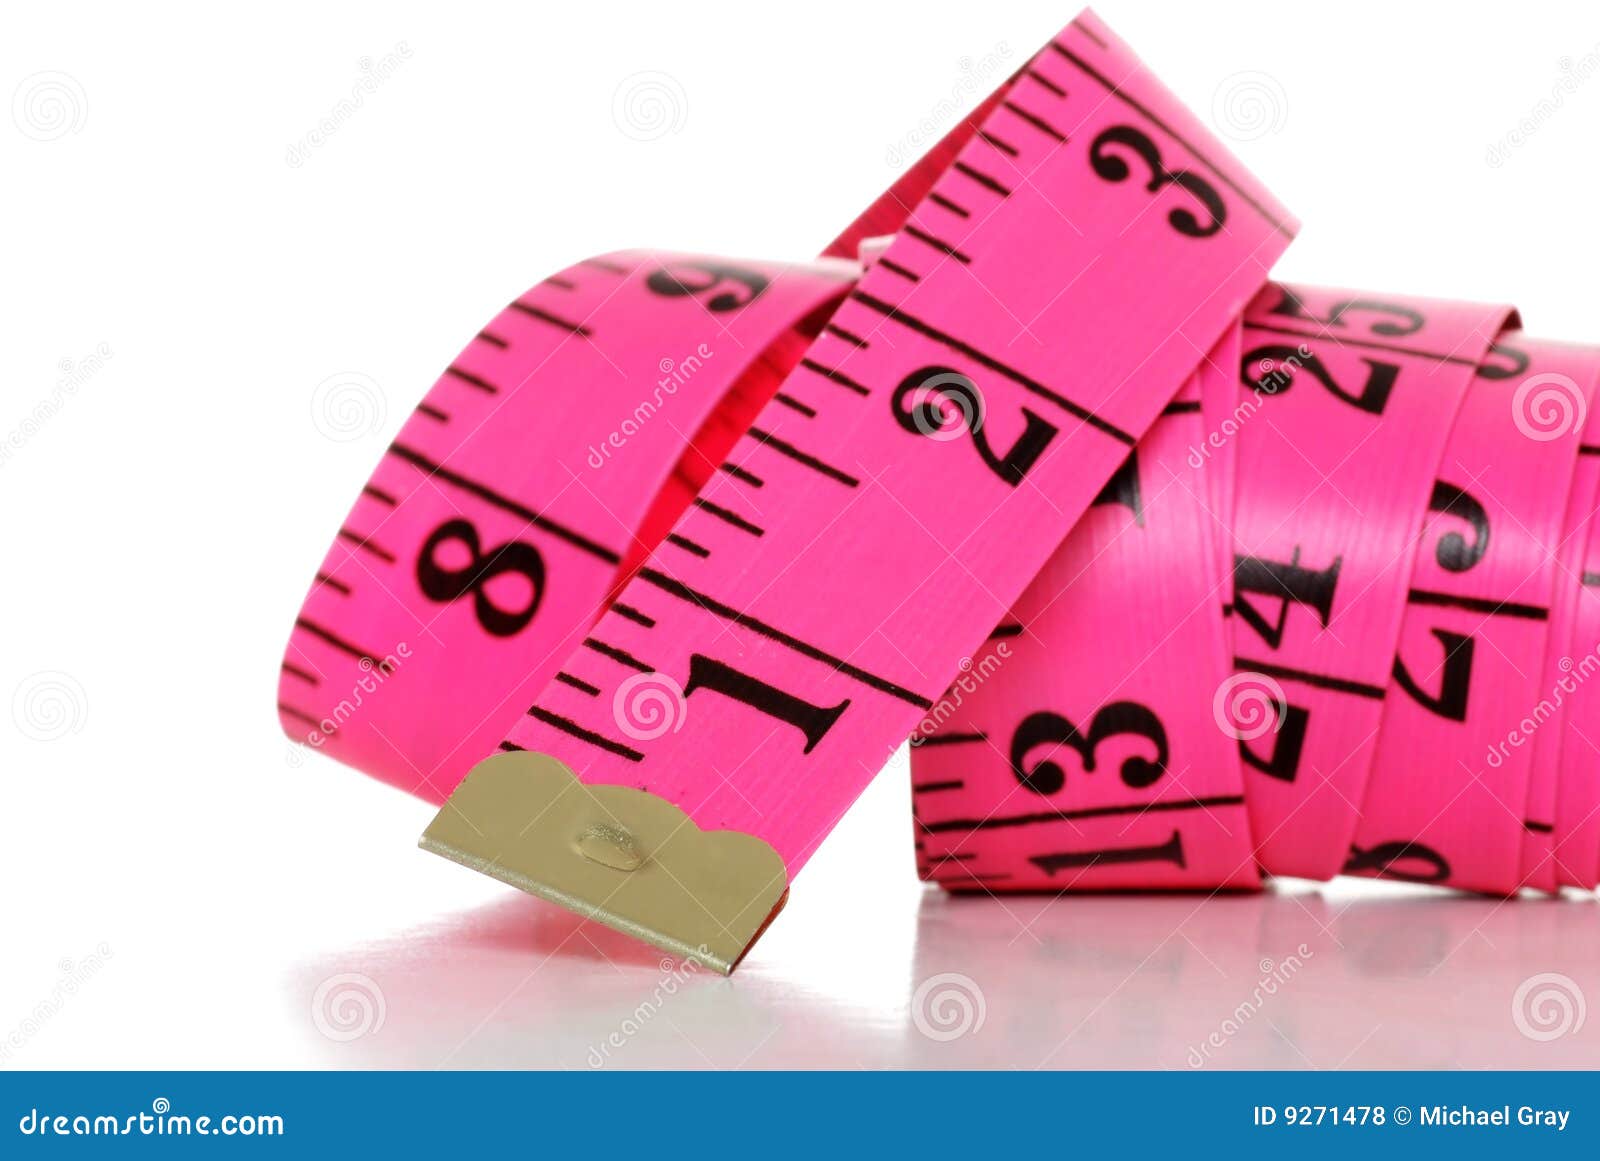 Pink Measuring Tape Free Stock Photo